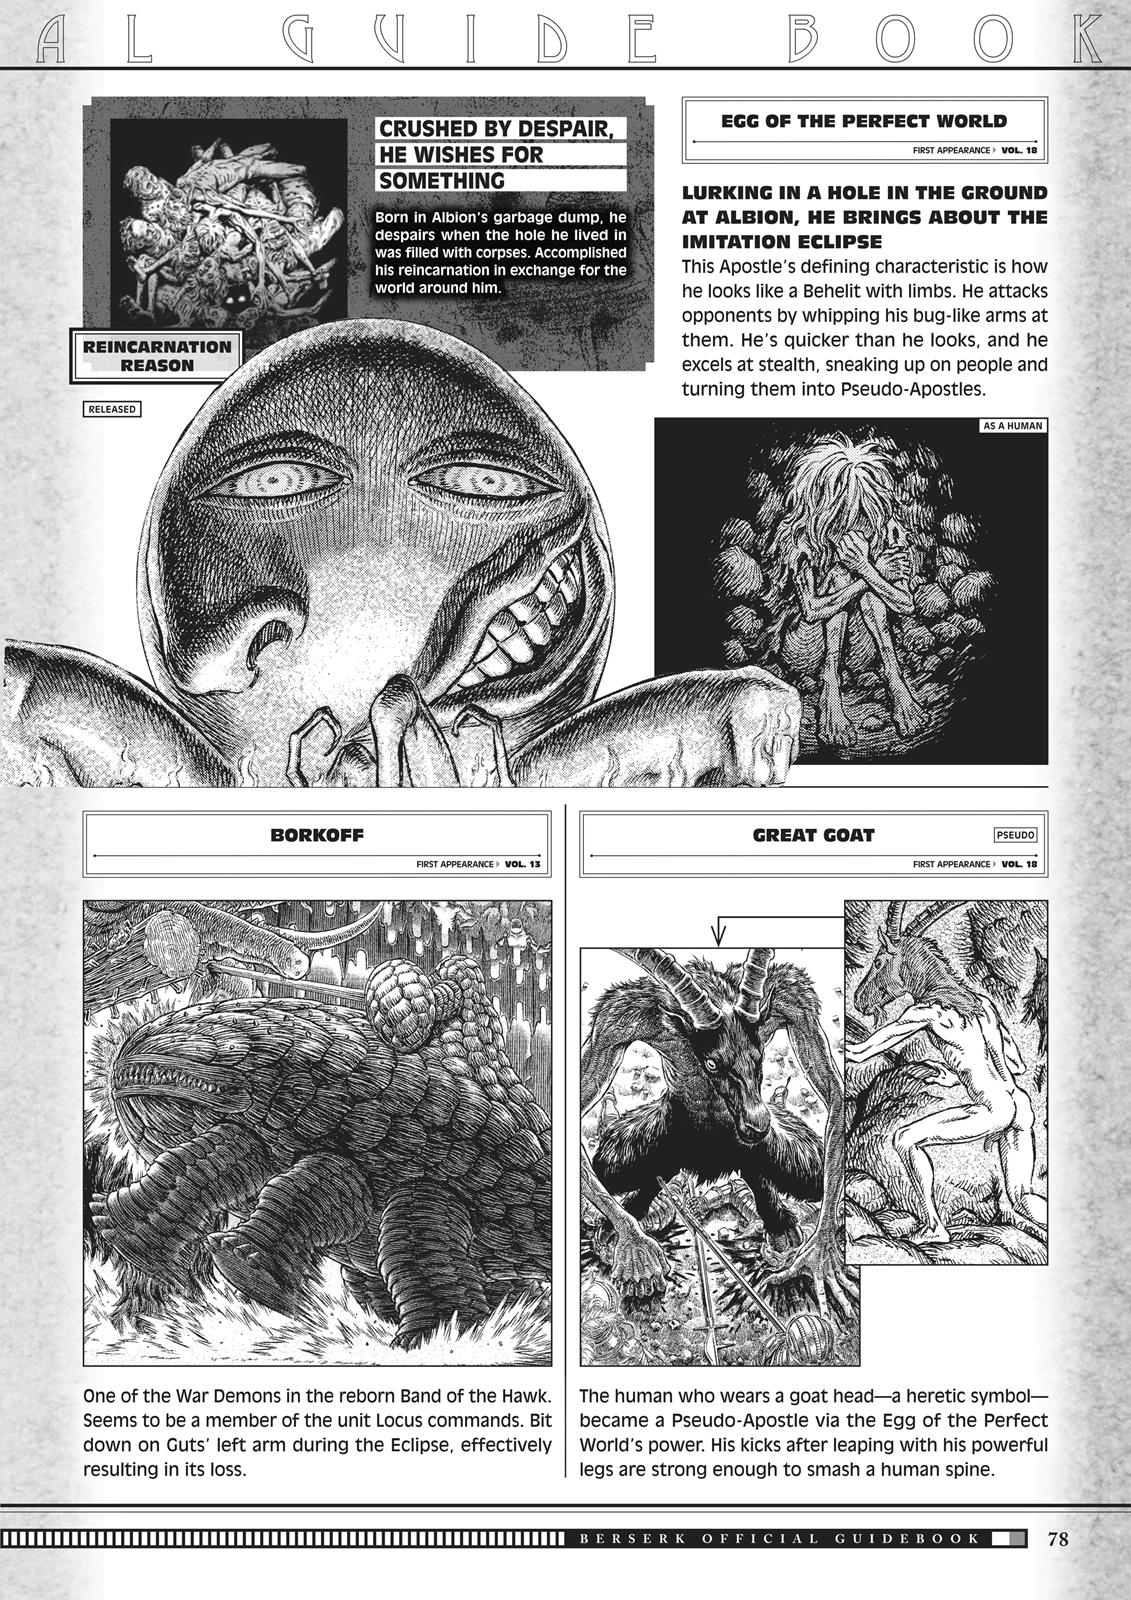 Berserk Manga Chapter 350.5 image 076